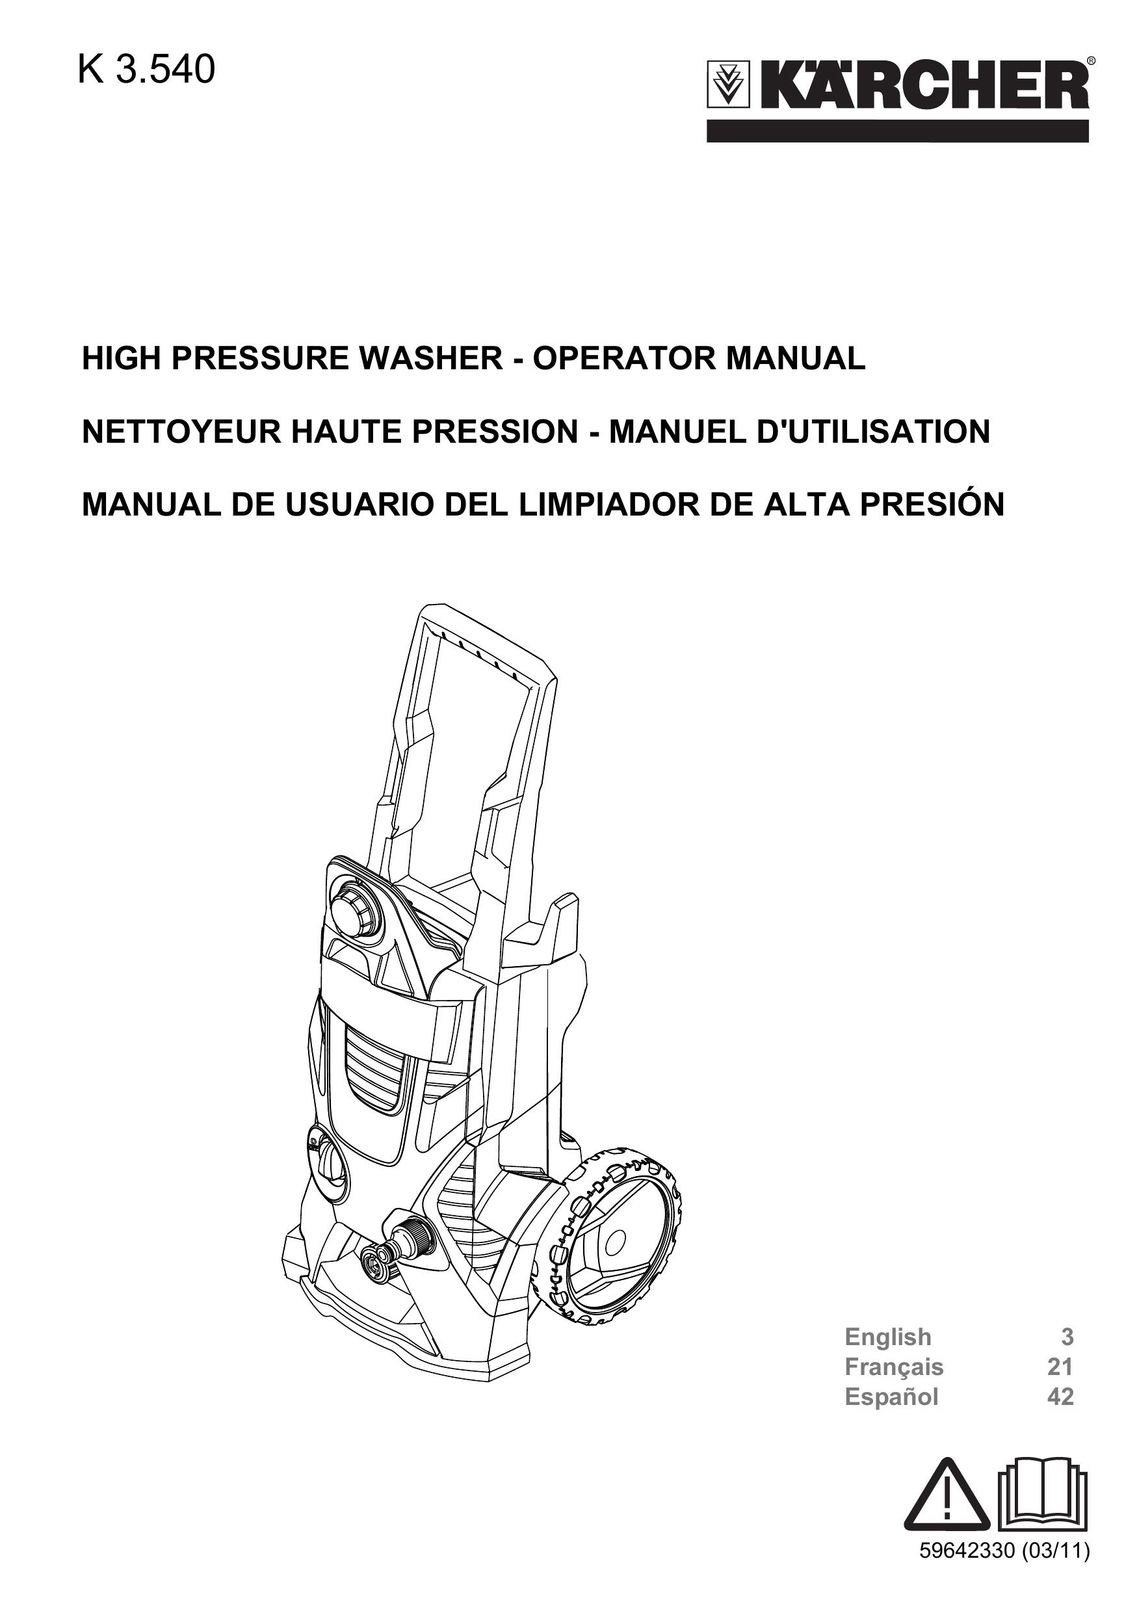 Karcher K 3.540 Air Cleaner User Manual